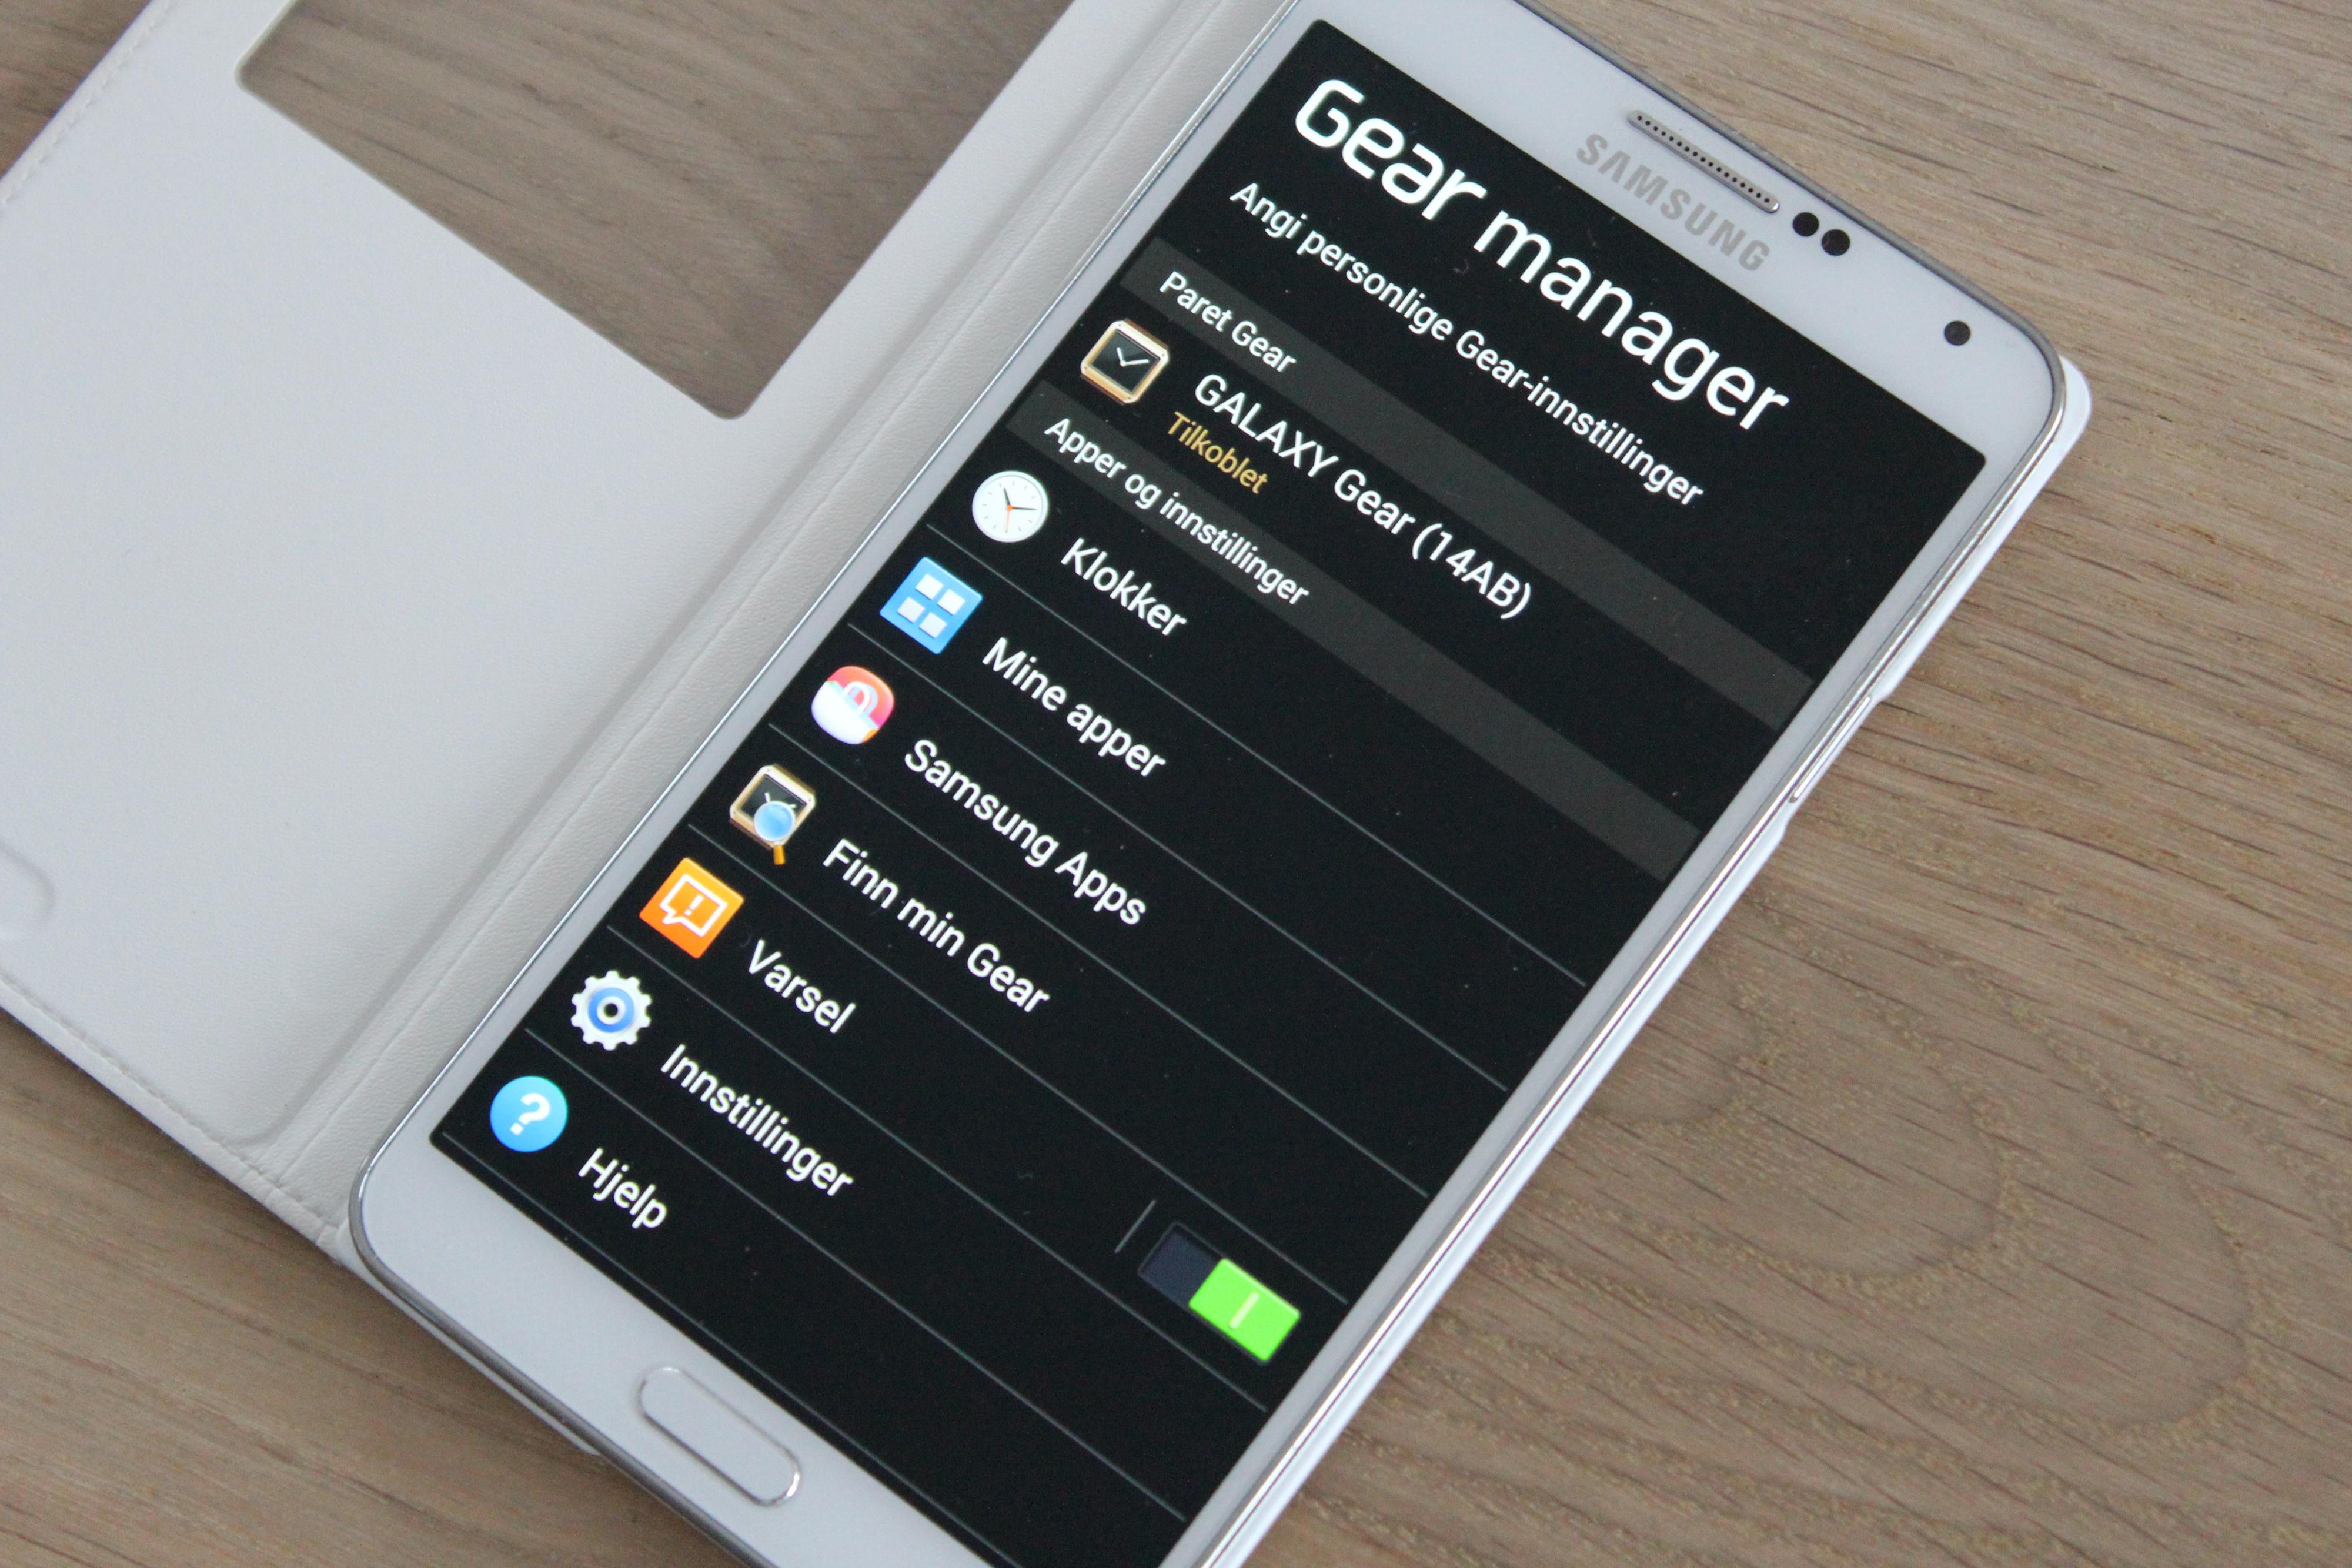 Du må ha Gear Manager på mobilen for å kunne bruke Galaxy Gear. Slik ser den ut på Galaxy Note 3Foto: Espen Irwing Swang, Amobil.no